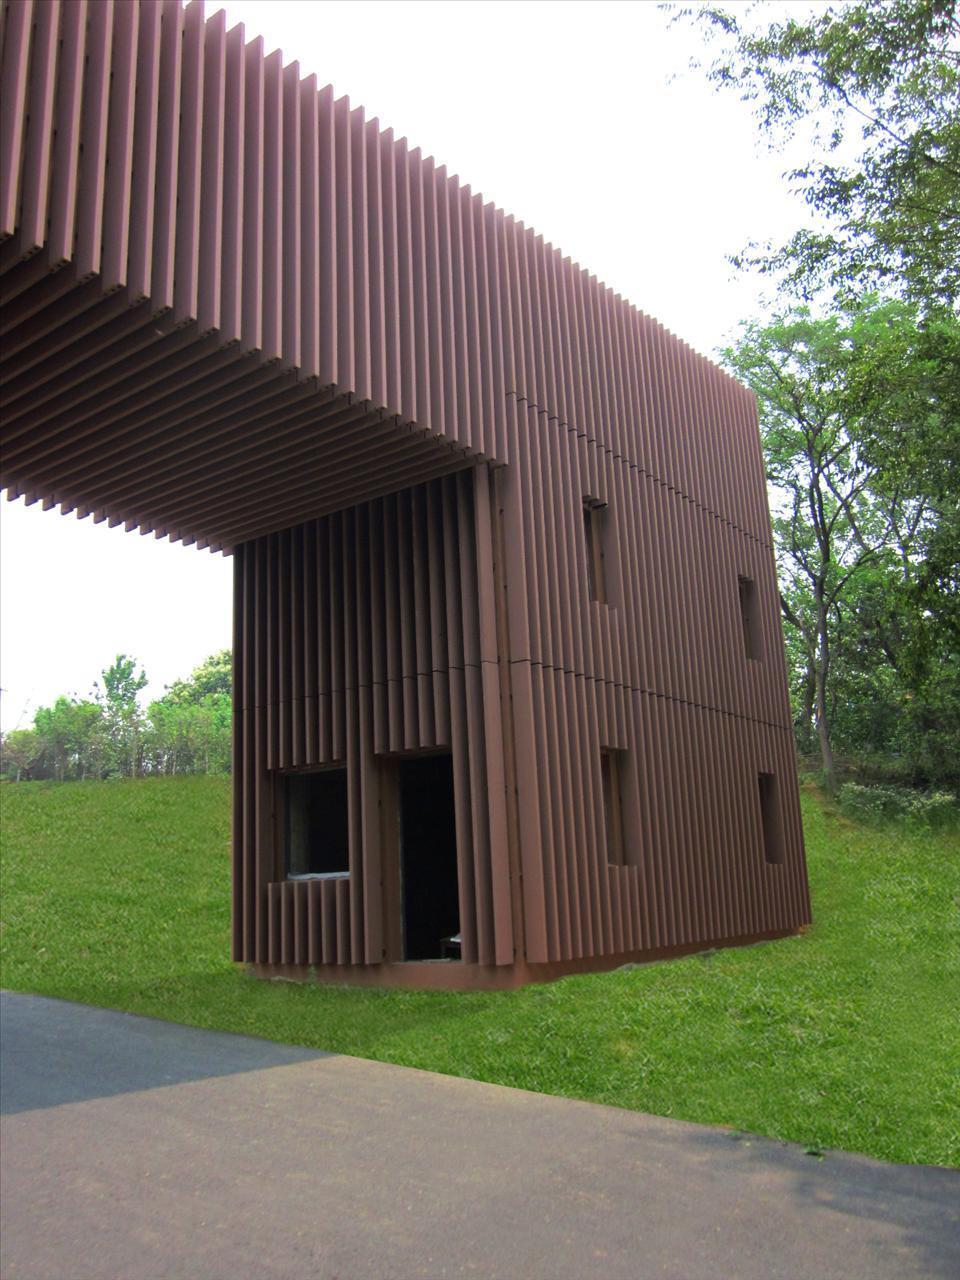 西安塑木挂板厂家生产定做木塑墙面墙板 